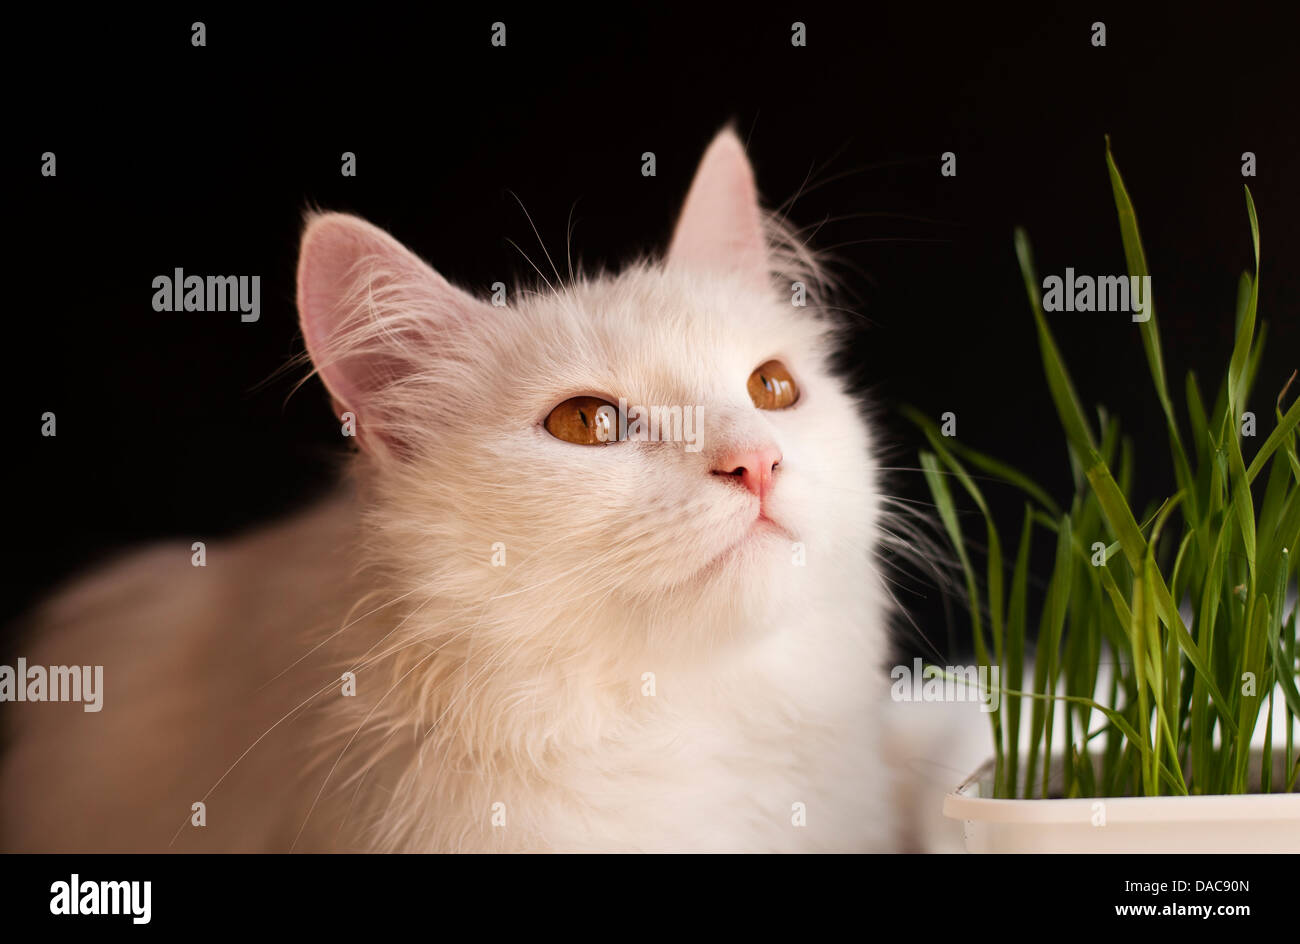 Gato y hierba Foto de stock